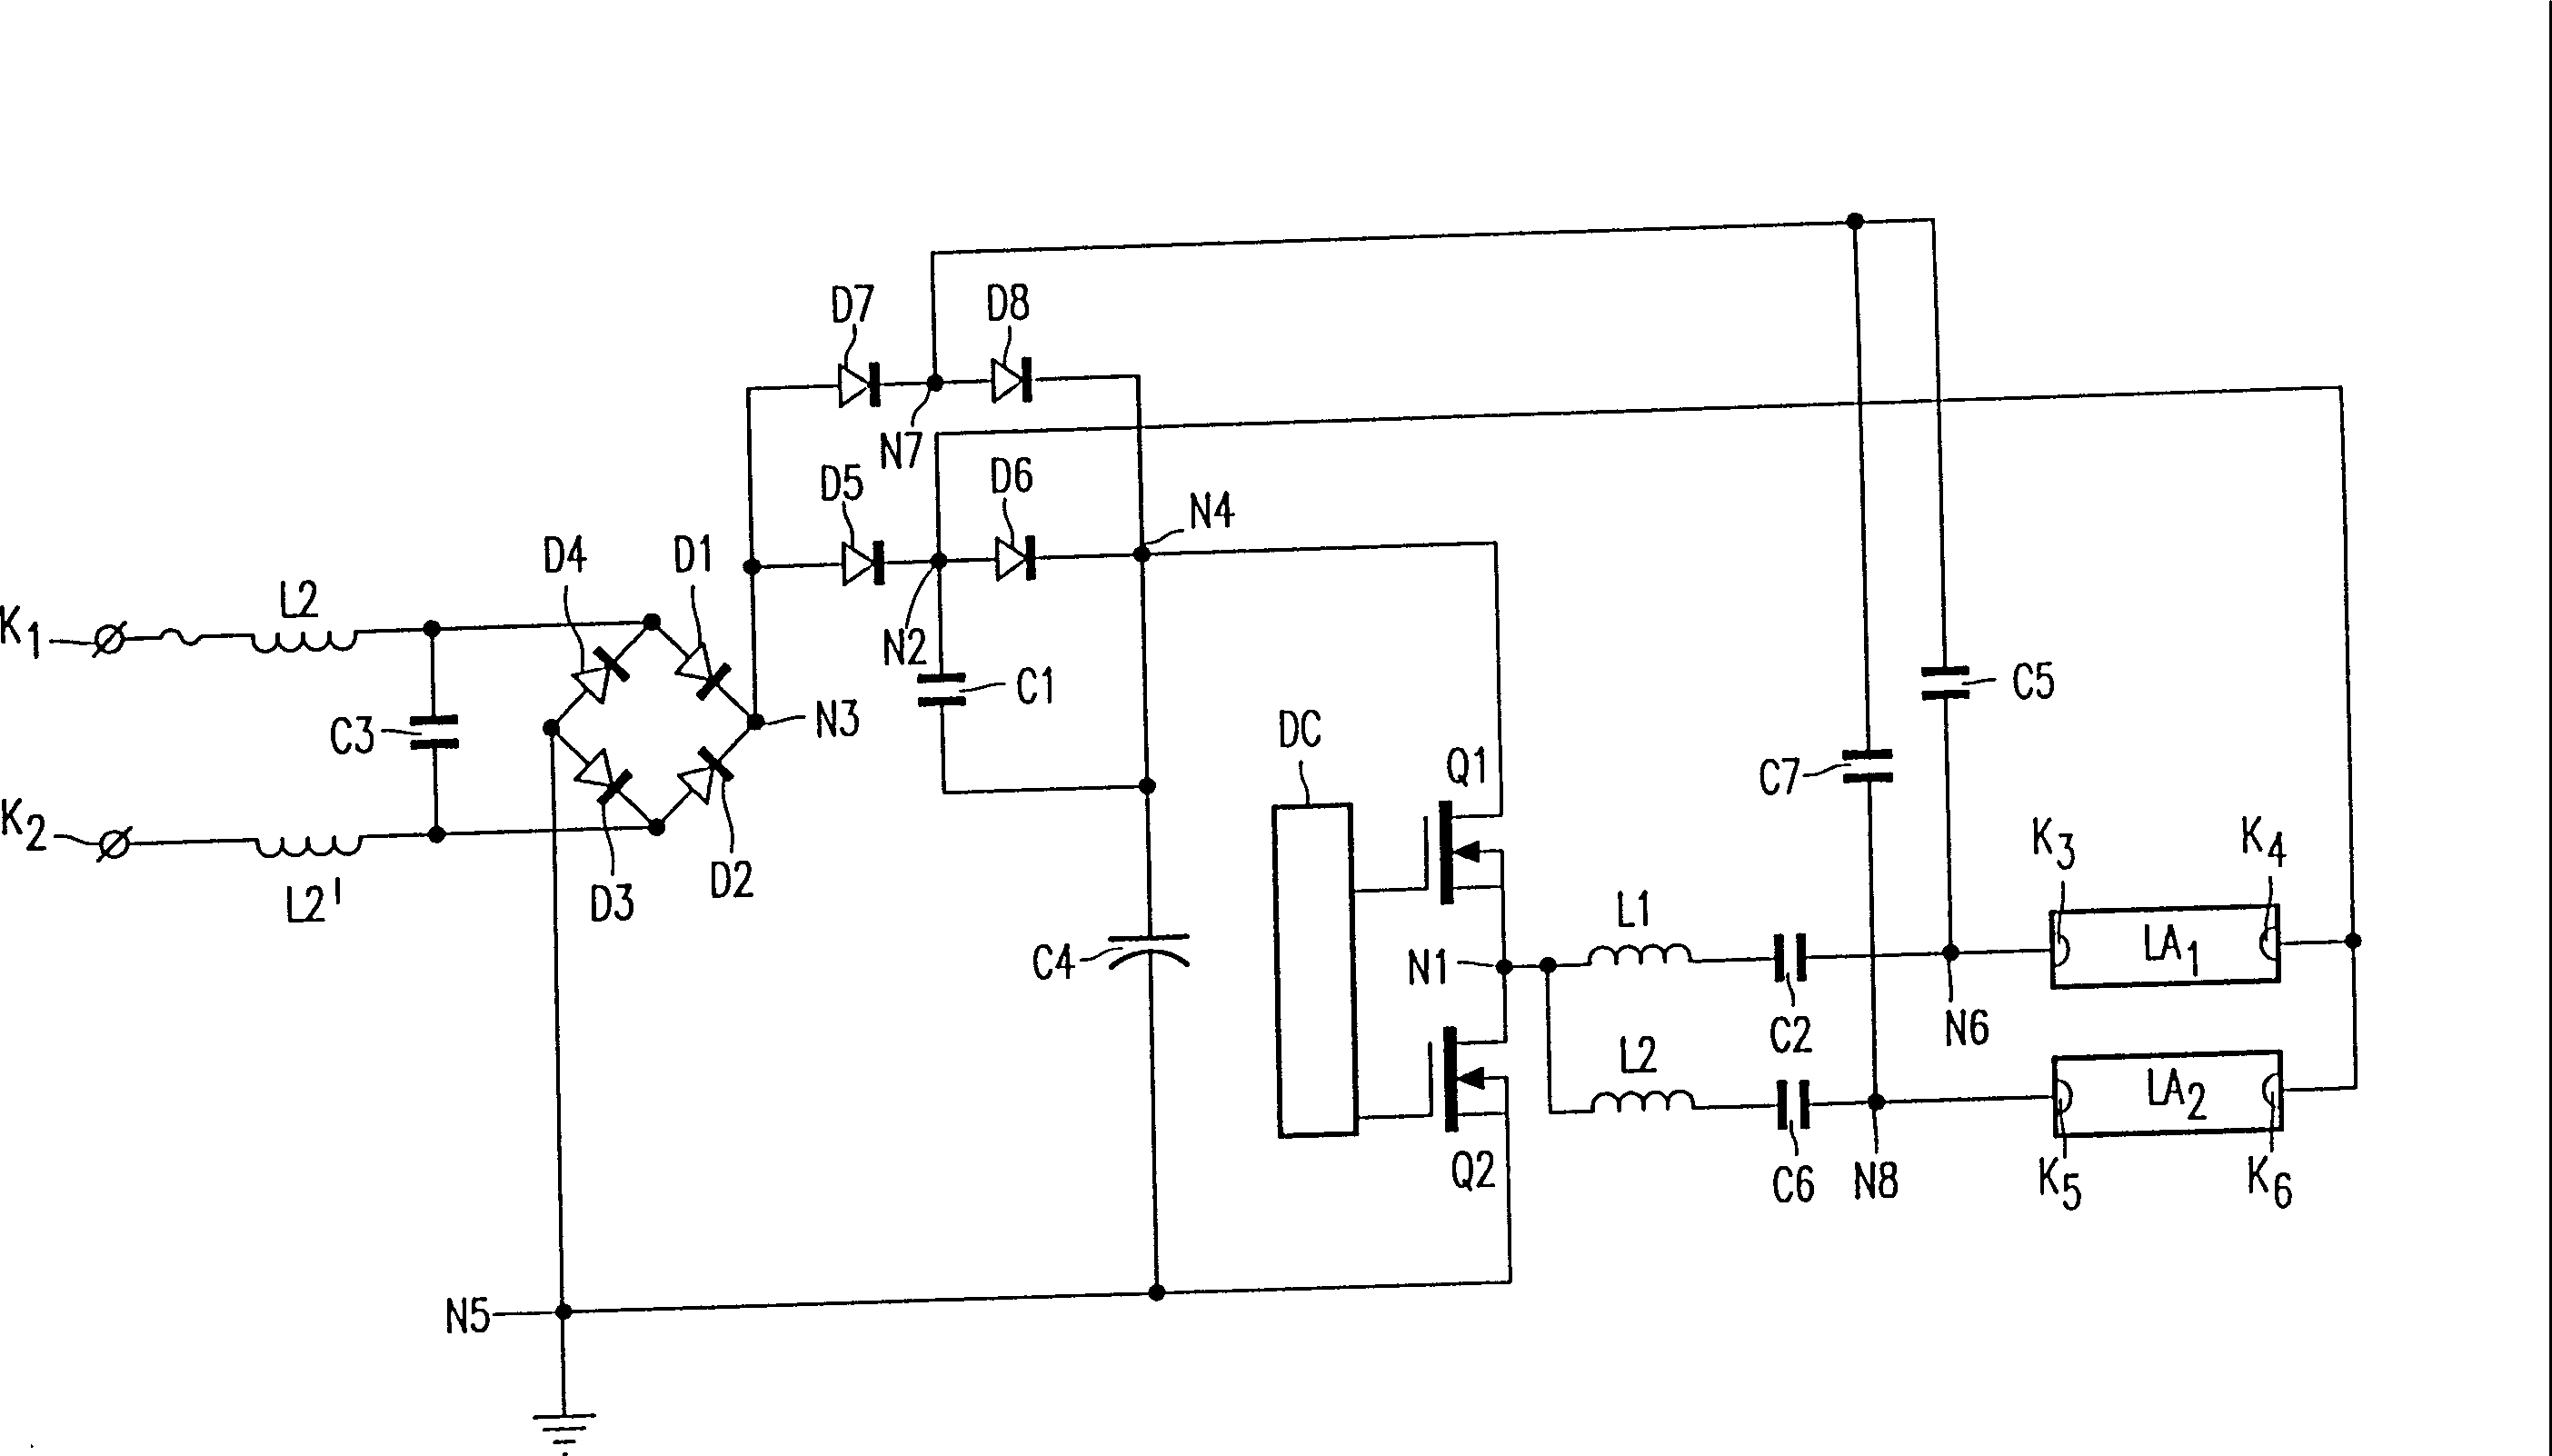 Circuit device